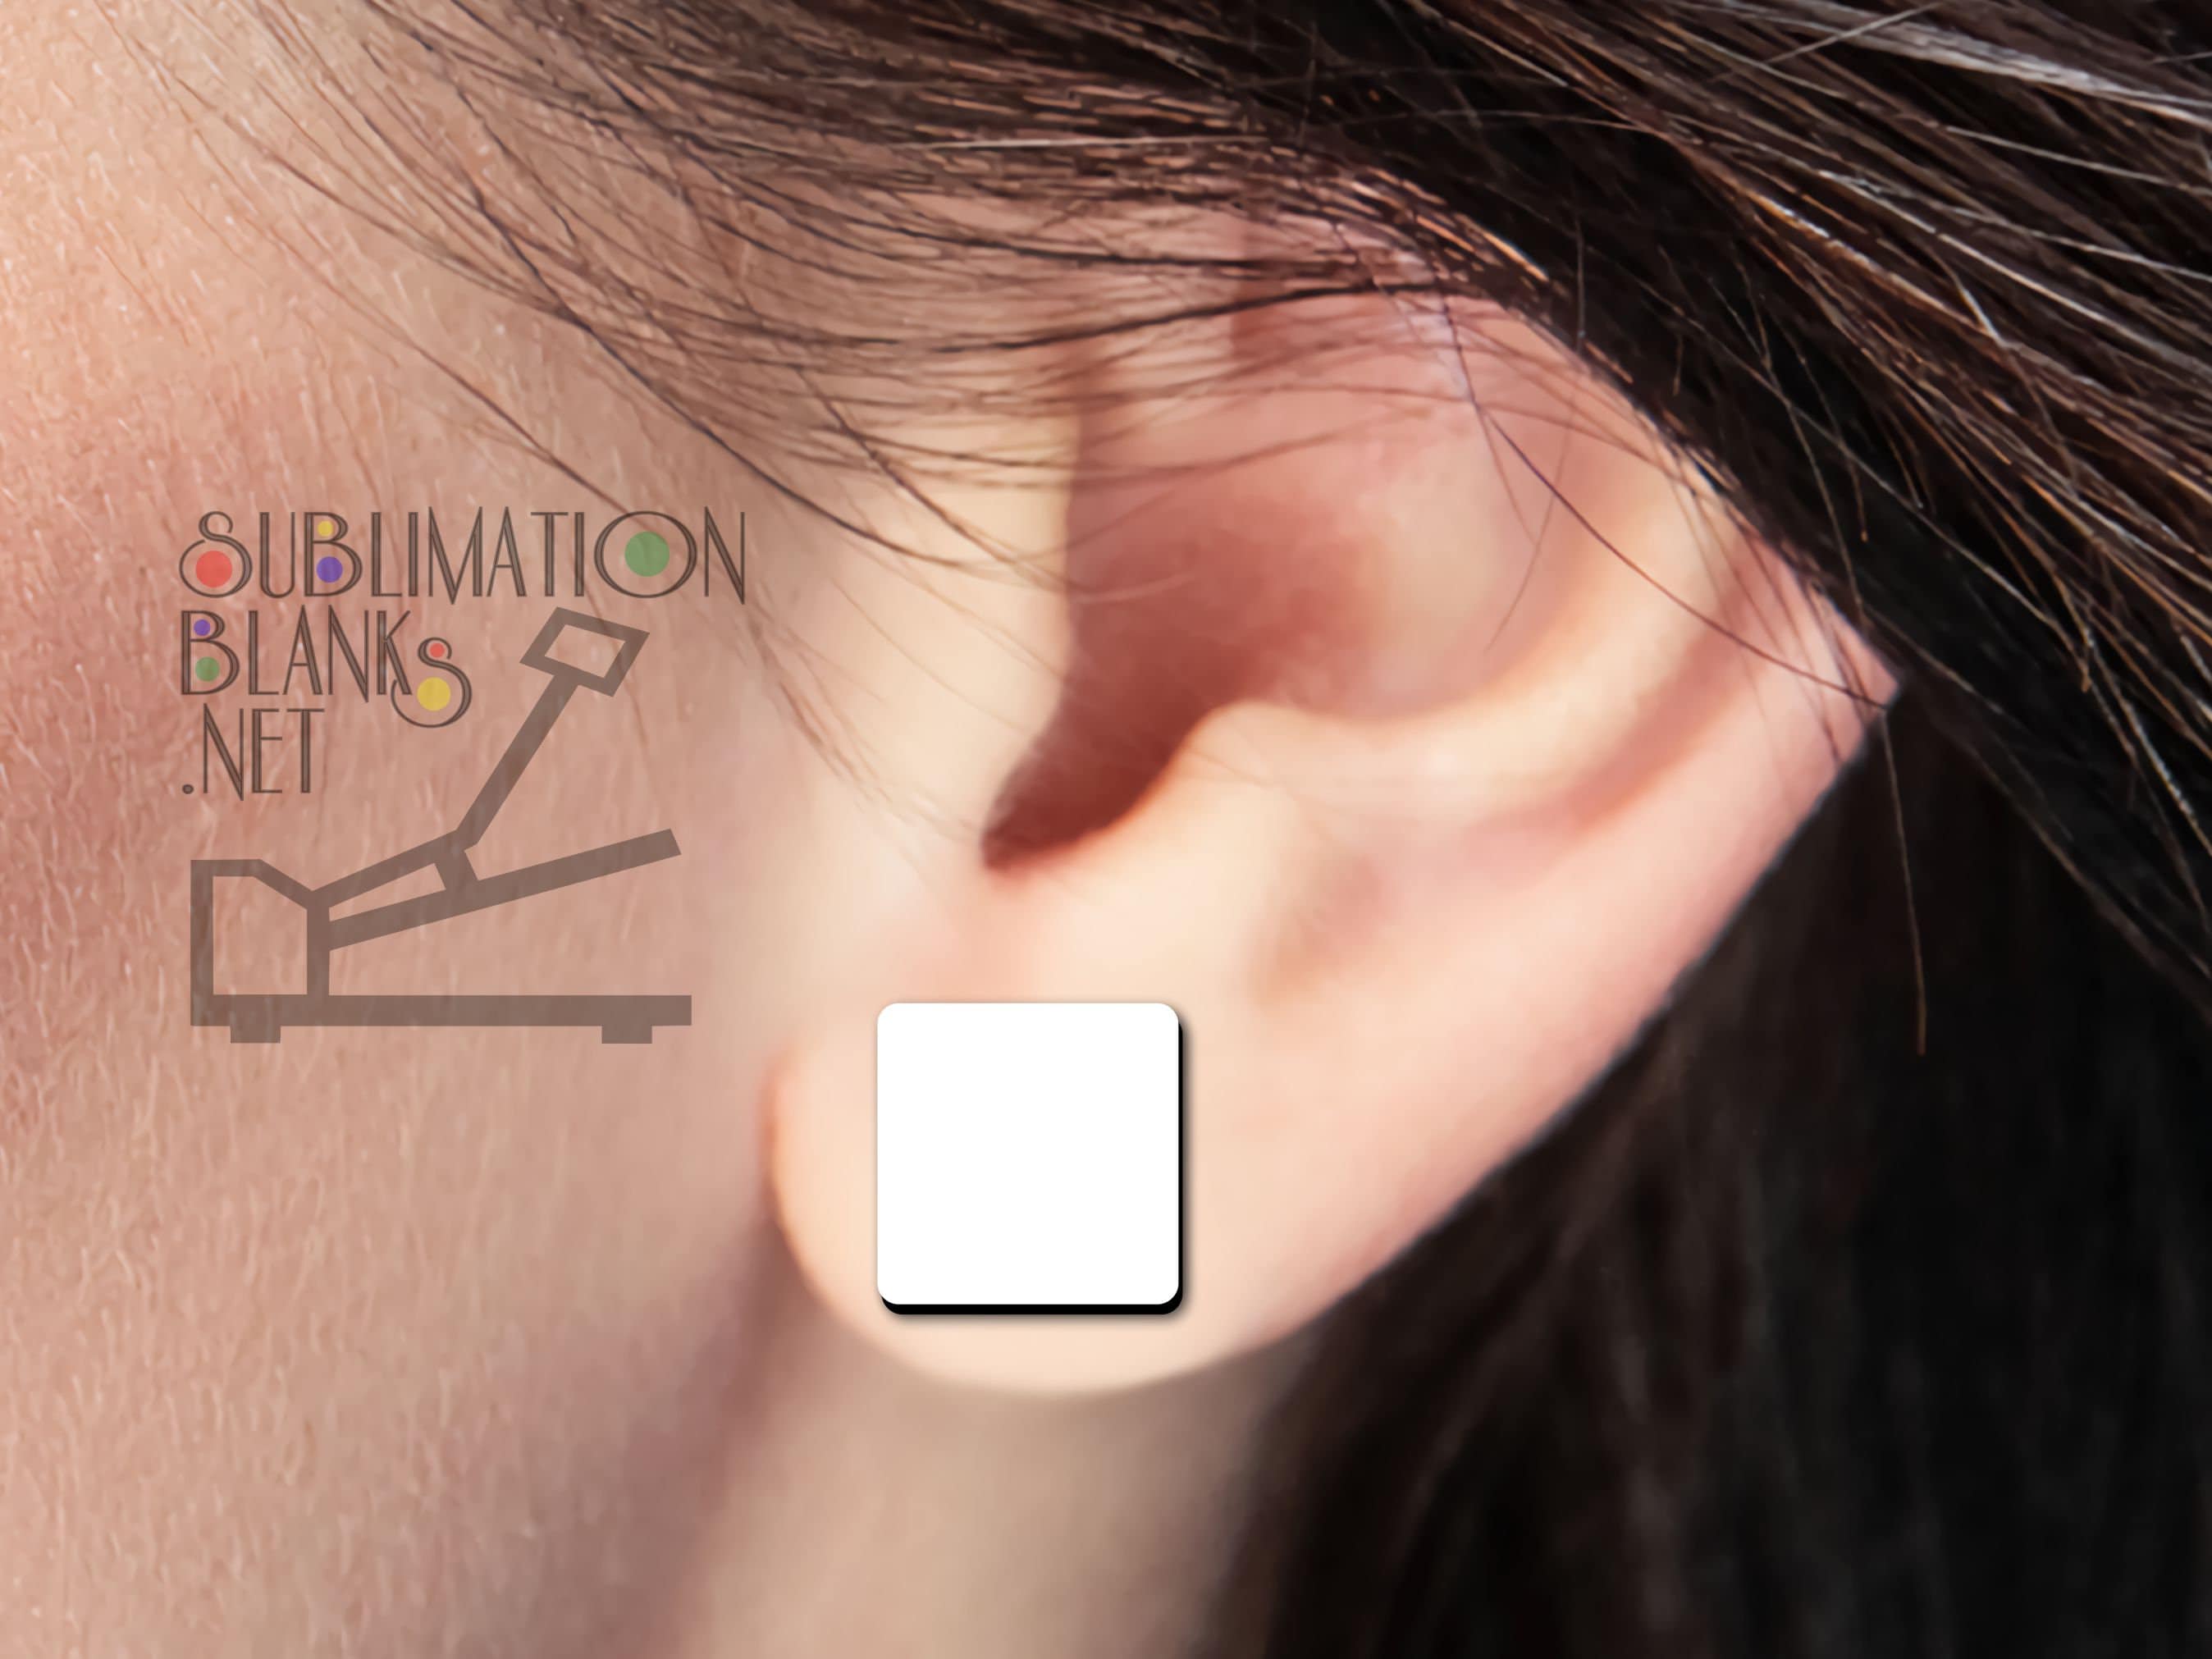 EUBUY 250pcs Sublimation Blank Earrings Set Heat Transfer Earring